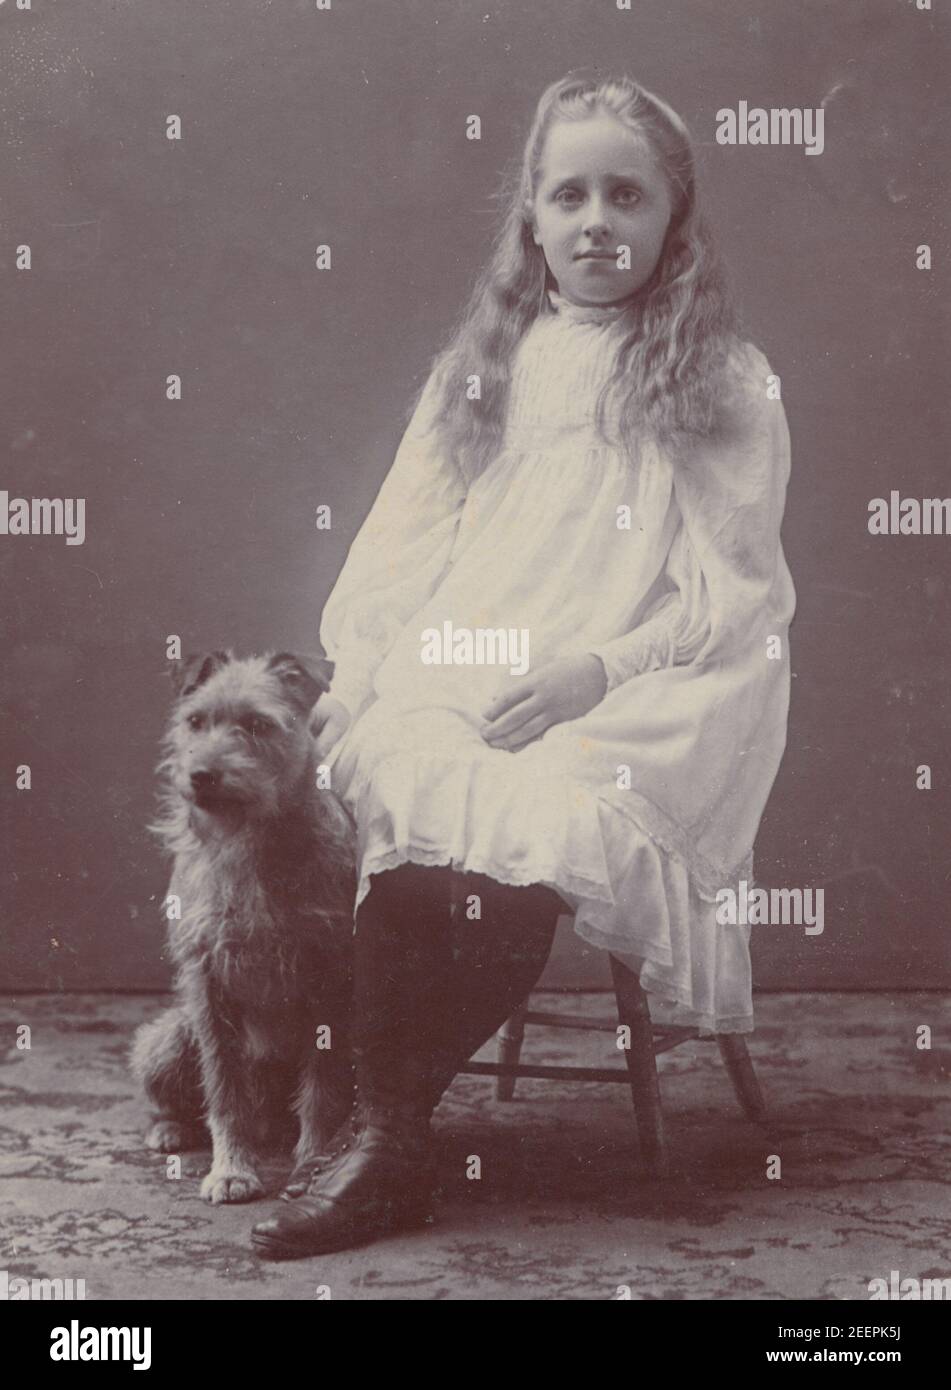 Cartolina fotografica edoardiana vintage 1906 di una giovane ragazza Sat con il suo cane da compagnia chiamato Joe. Foto Stock